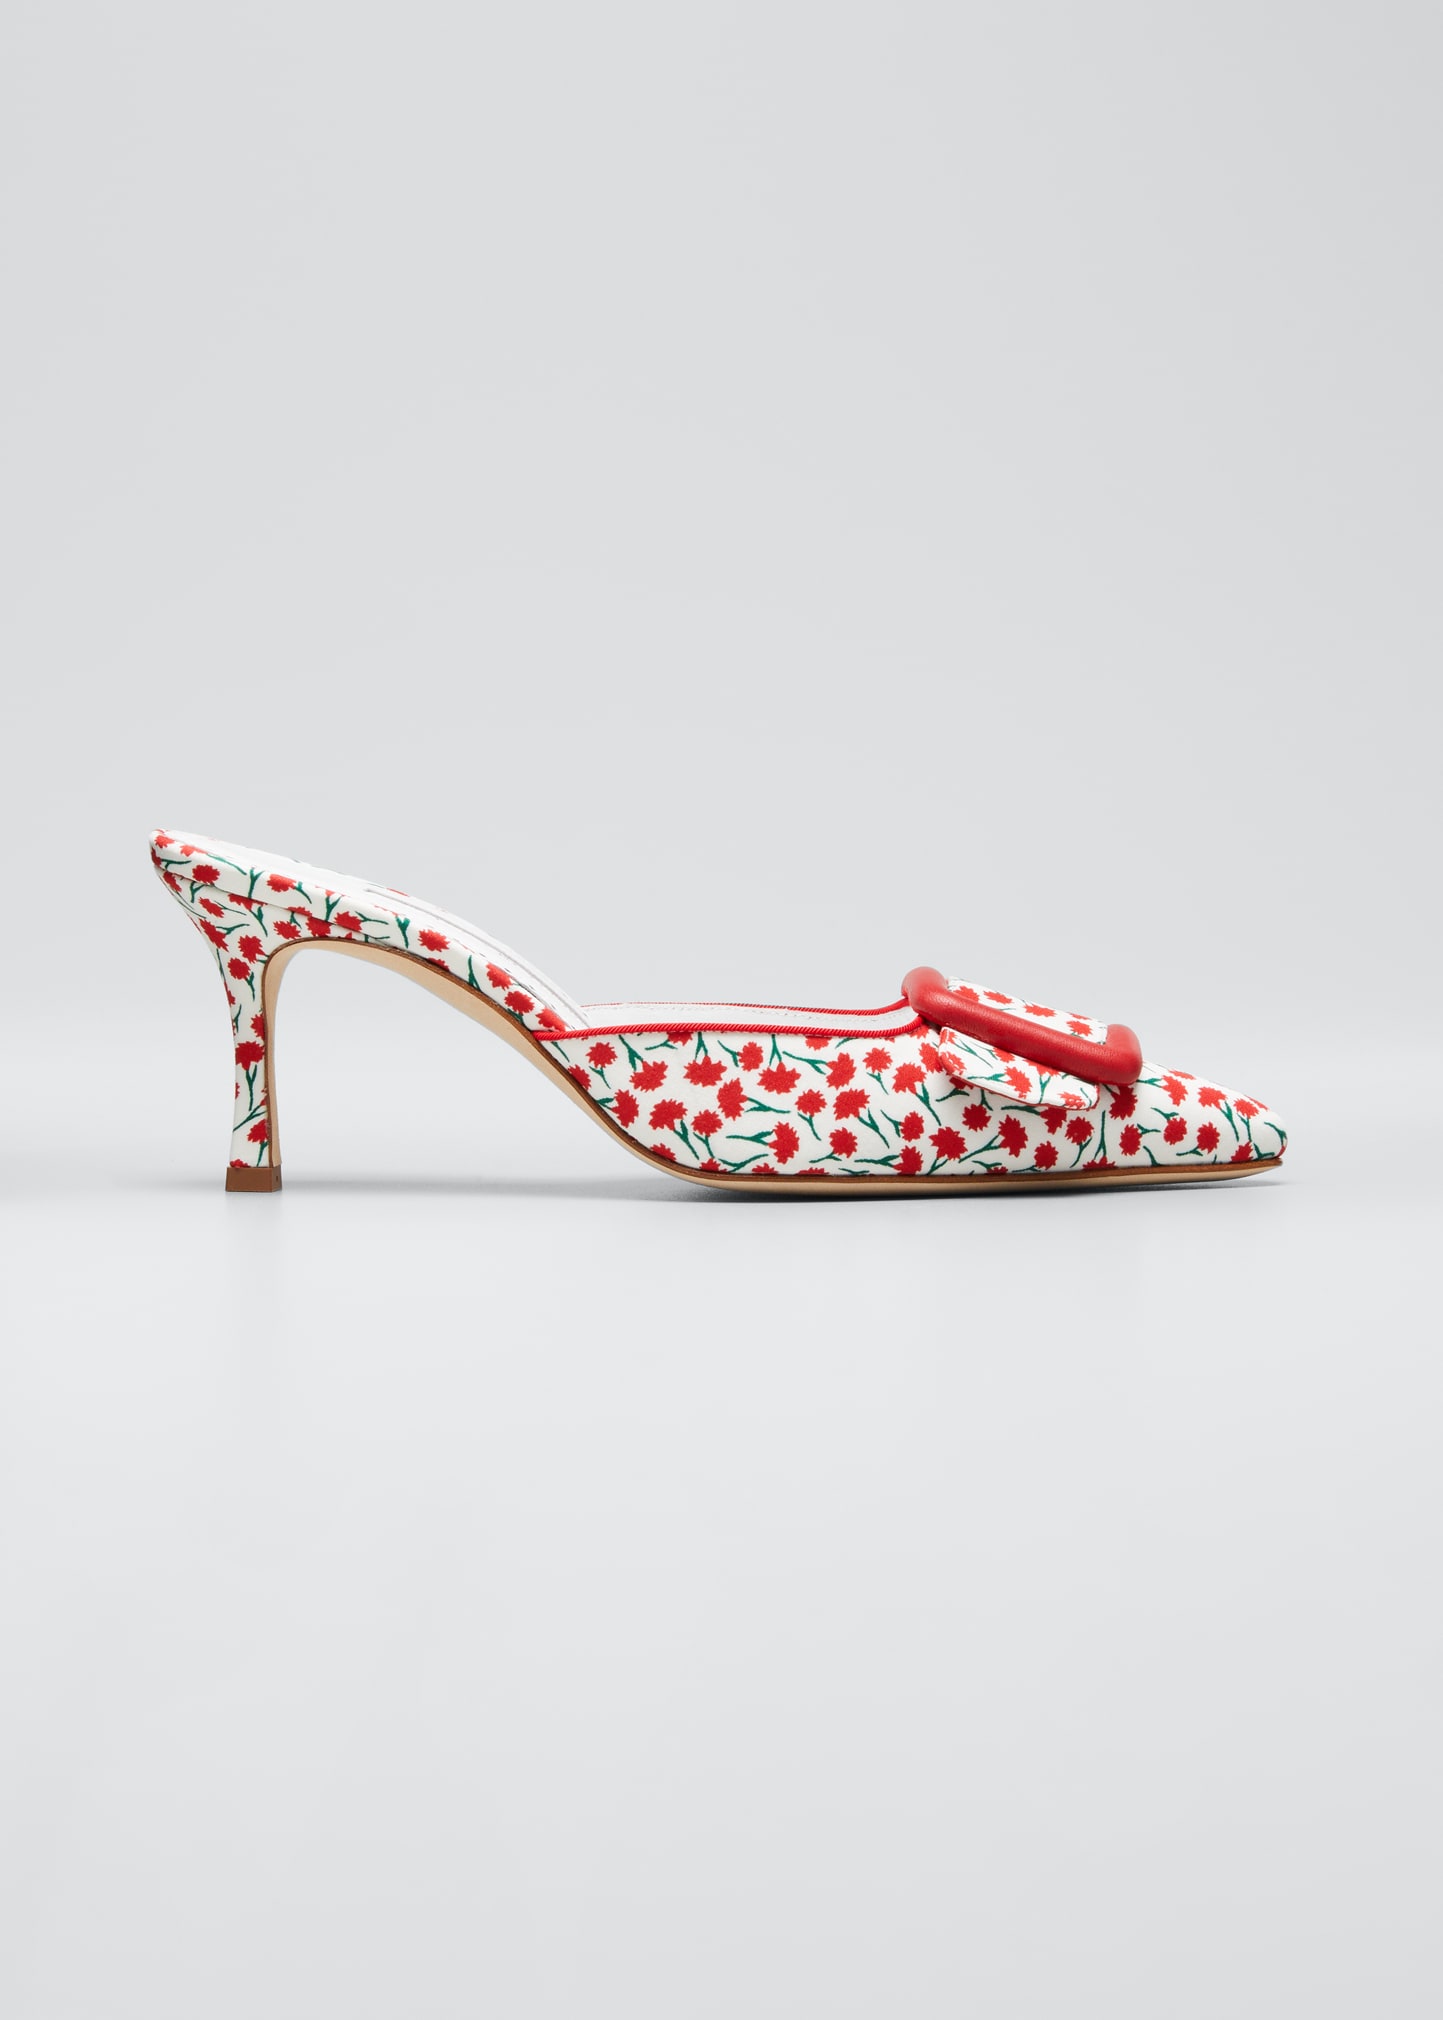 MANOLO BLAHNIK Sandals for Women | ModeSens